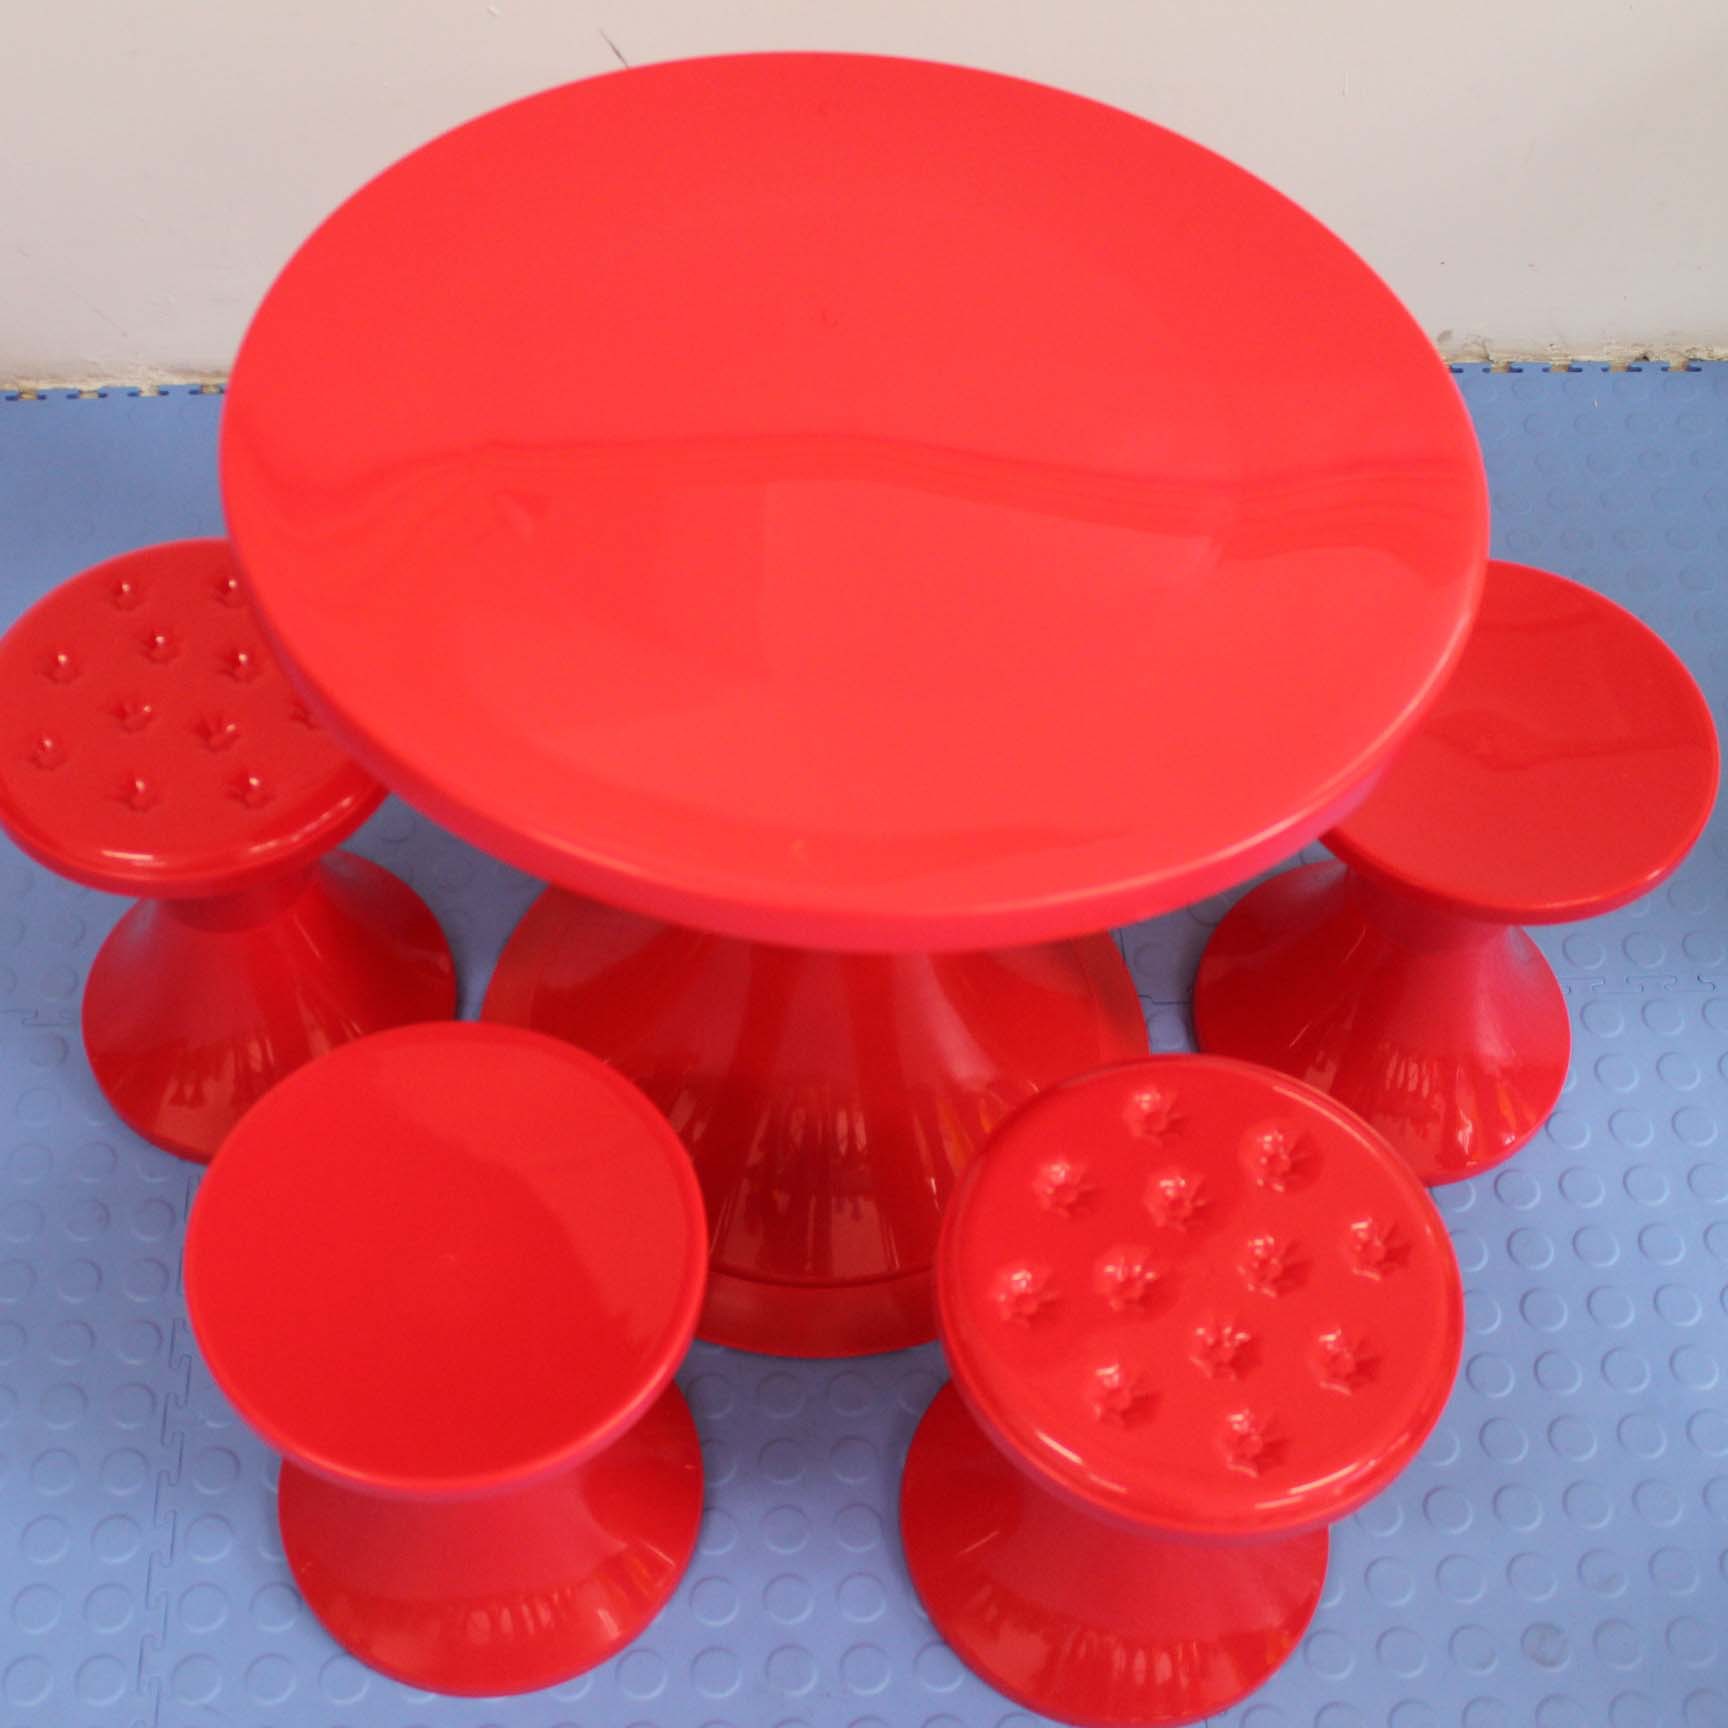 产品名称:塑料圆豉桌凳 产品规格:桌子 上圆:50cm*高 73cm*下圆37cm